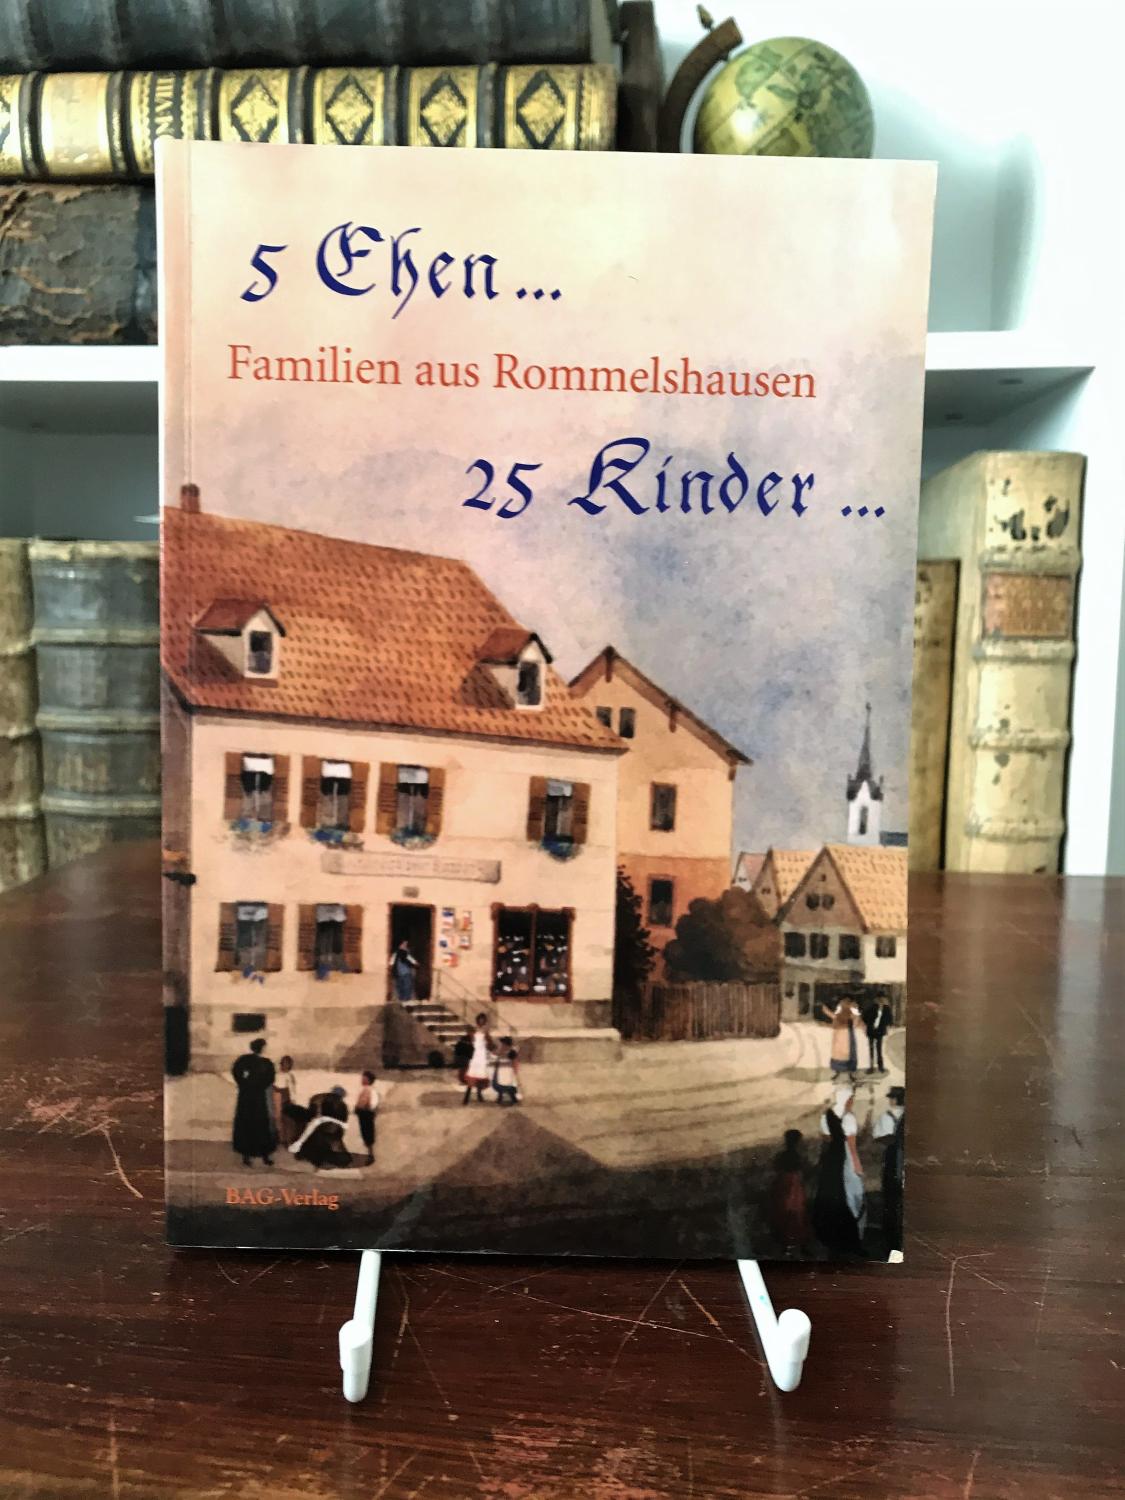 5 Ehen. 25 Kinder. Familien aus Rommelshausen. Hrsg. vom Verein für Heimat und Kultur e. V. - Matthias Theiner